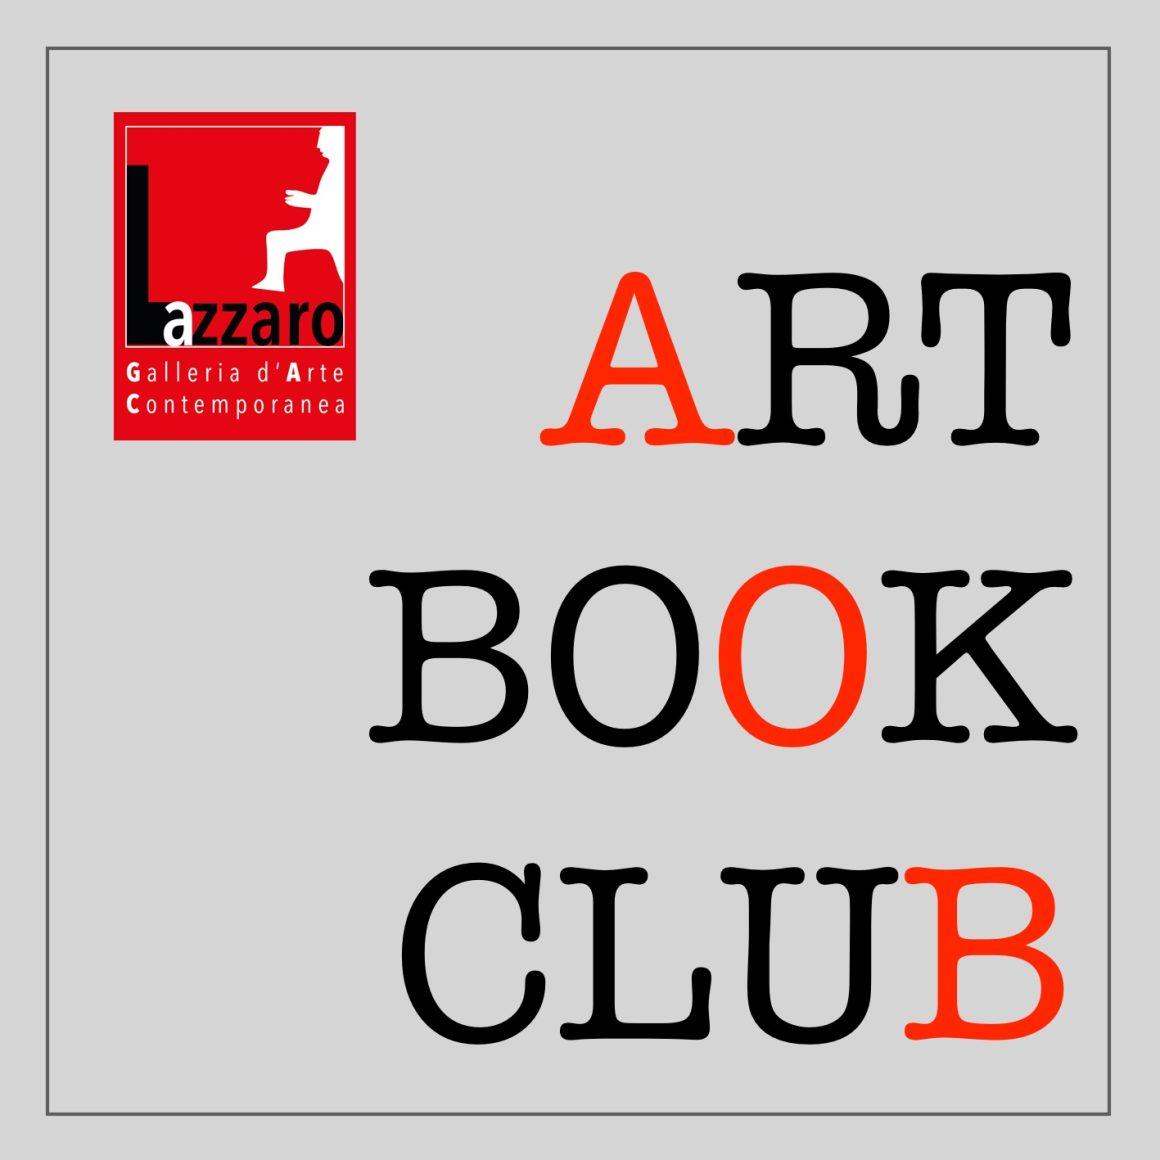 ART BOOK CLUB